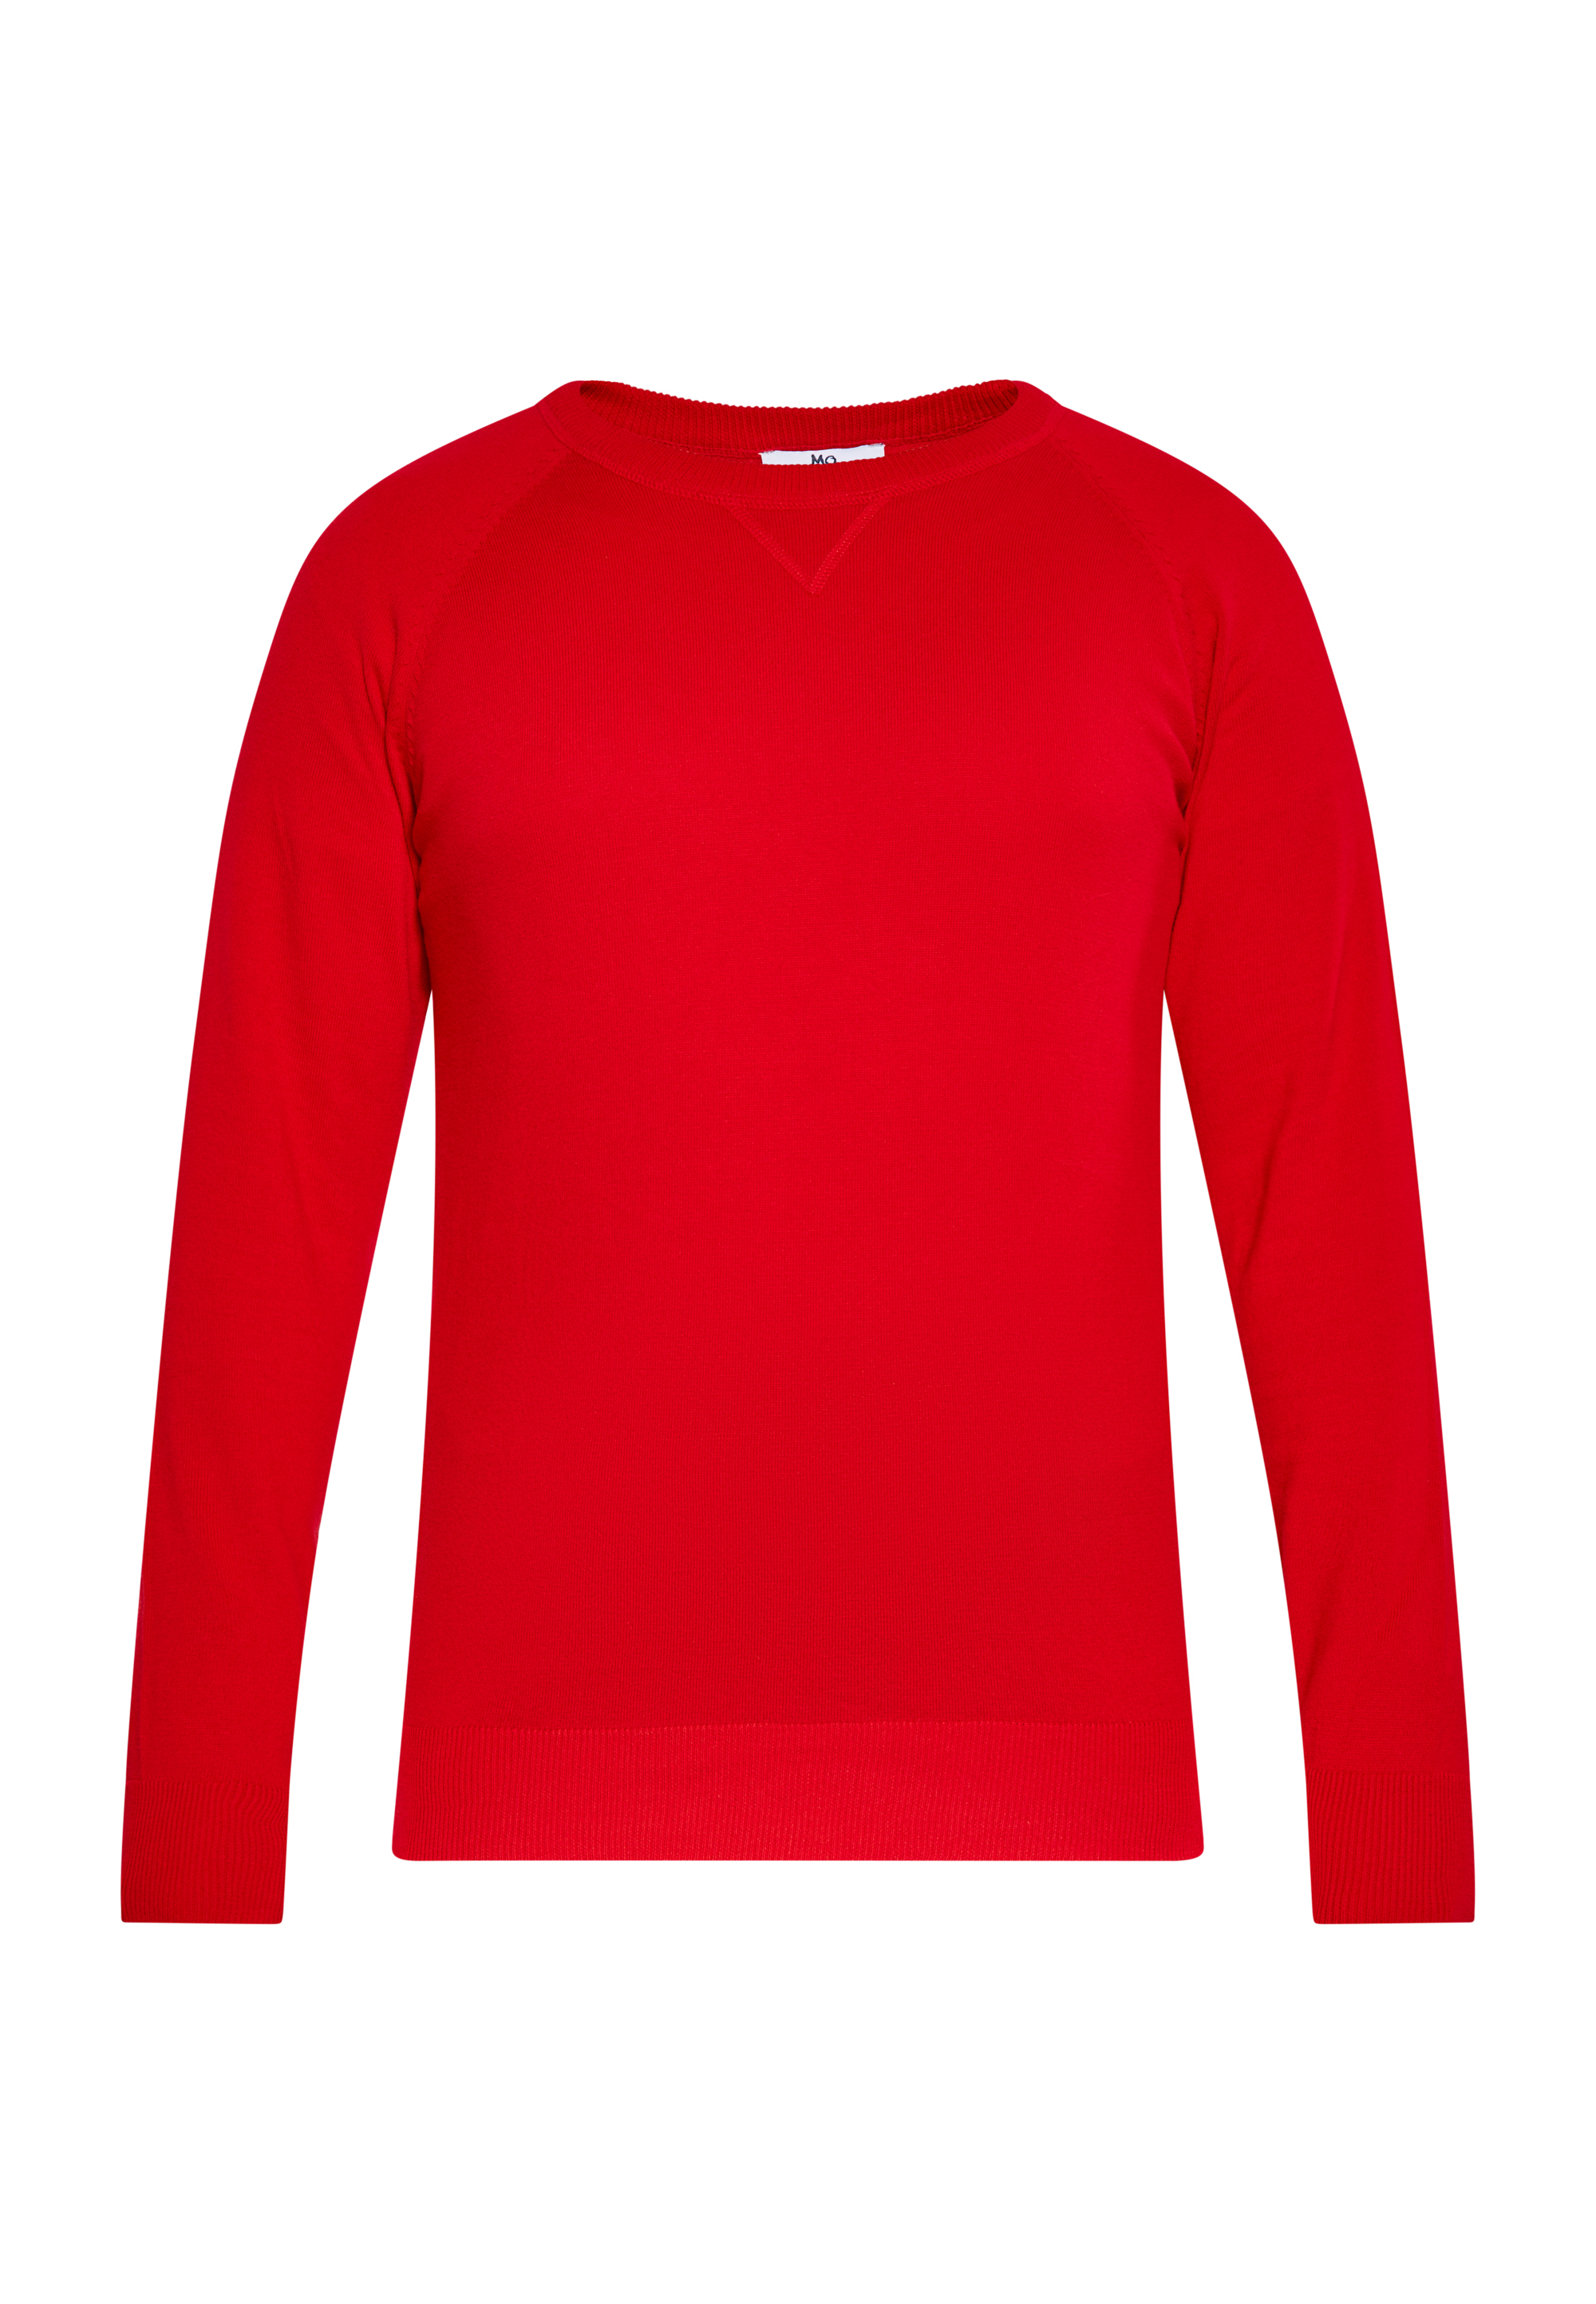 Пуловер MO, красный